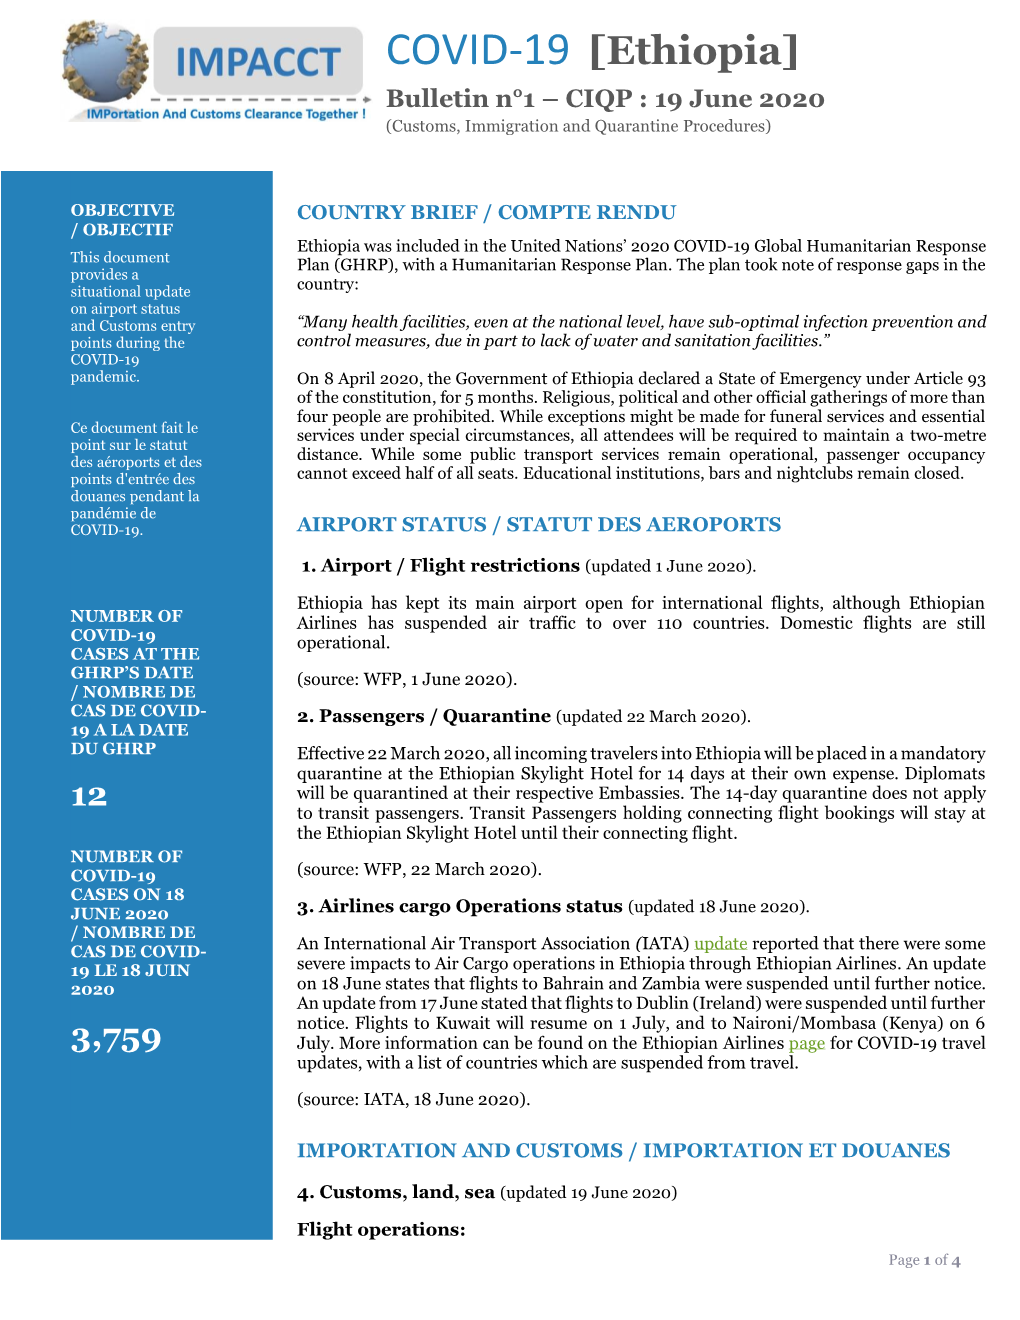 COVID-19 [Ethiopia] Bulletin N°1 – CIQP : 19 June 2020 (Customs, Immigration and Quarantine Procedures)